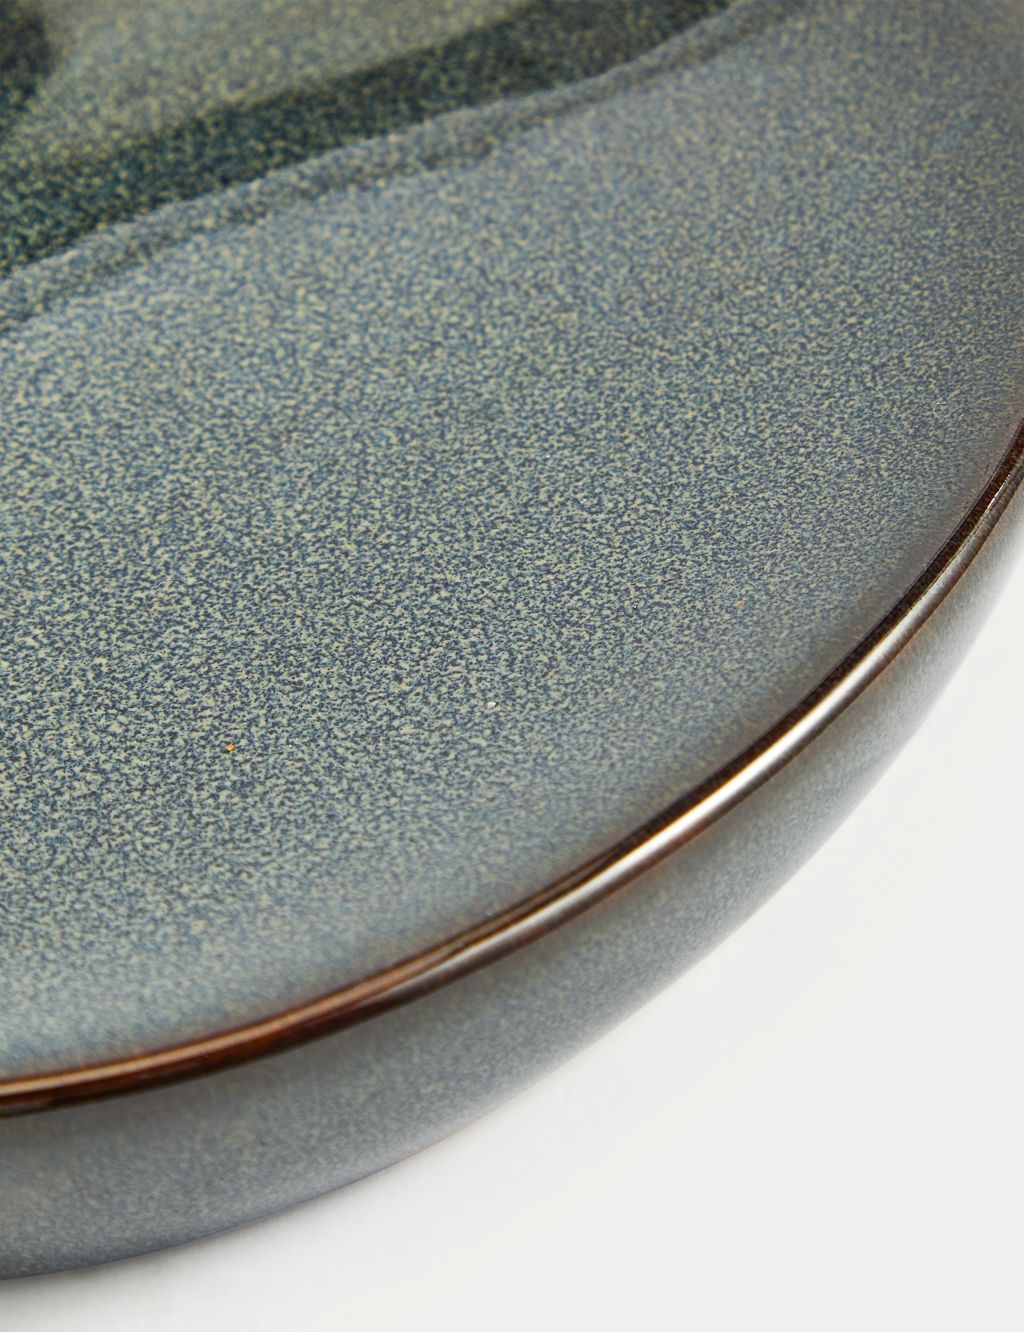 Ceramic Glazed Soap Dish 2 of 2